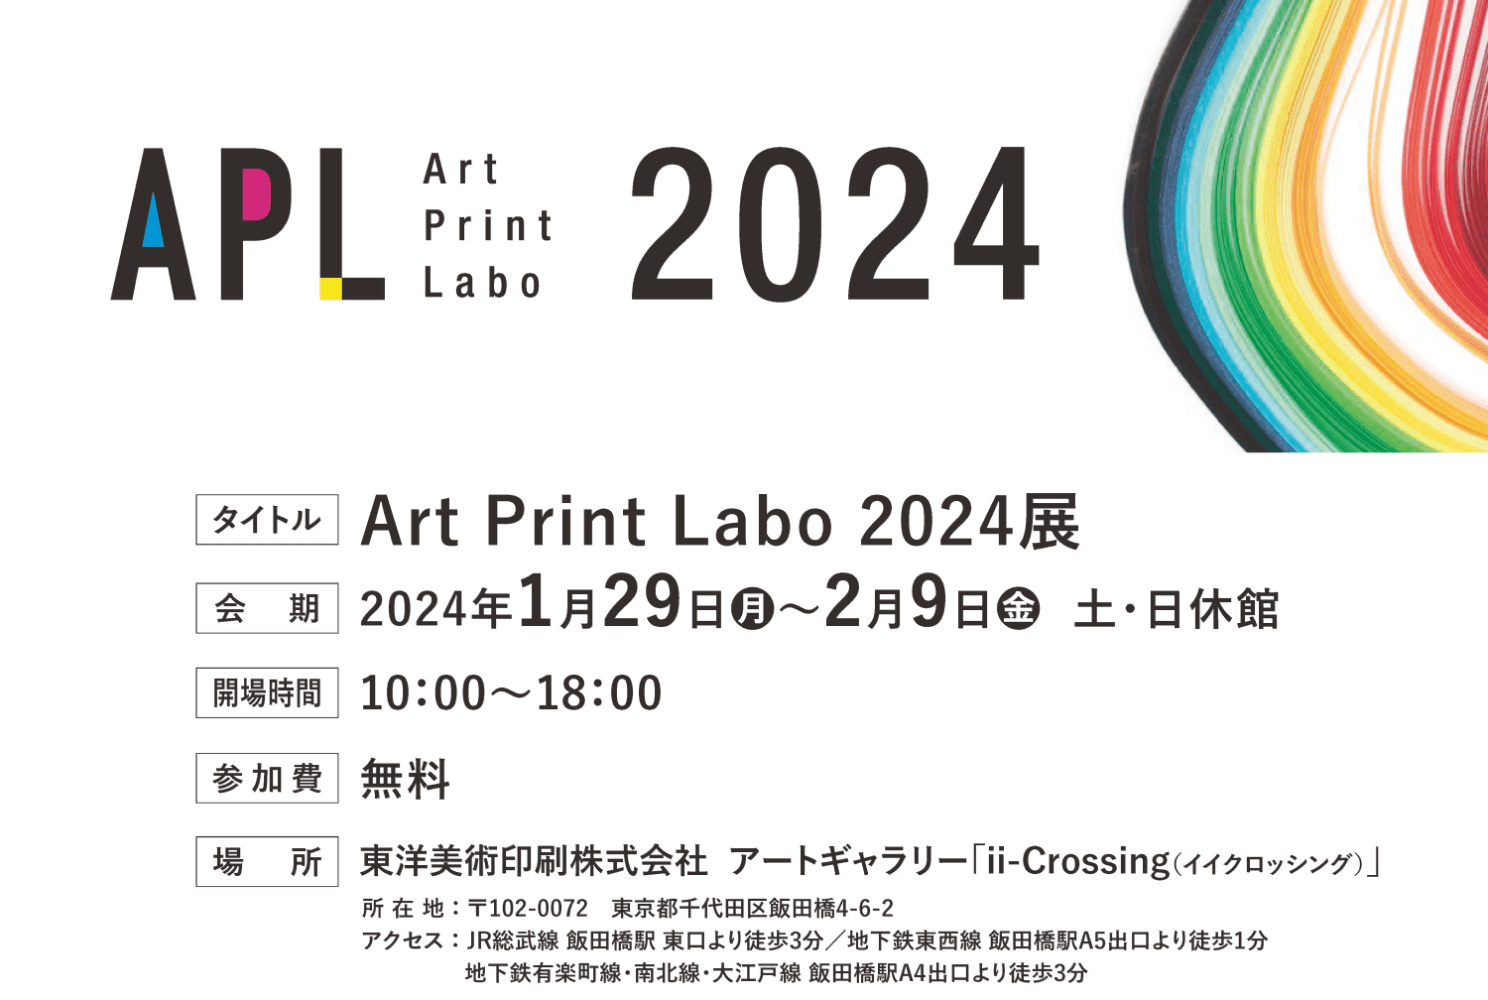 美術印刷の研究展示会「Art Print Labo 2024」展を開催します！【1/29（月）～2/9（金）東京・飯田橋】